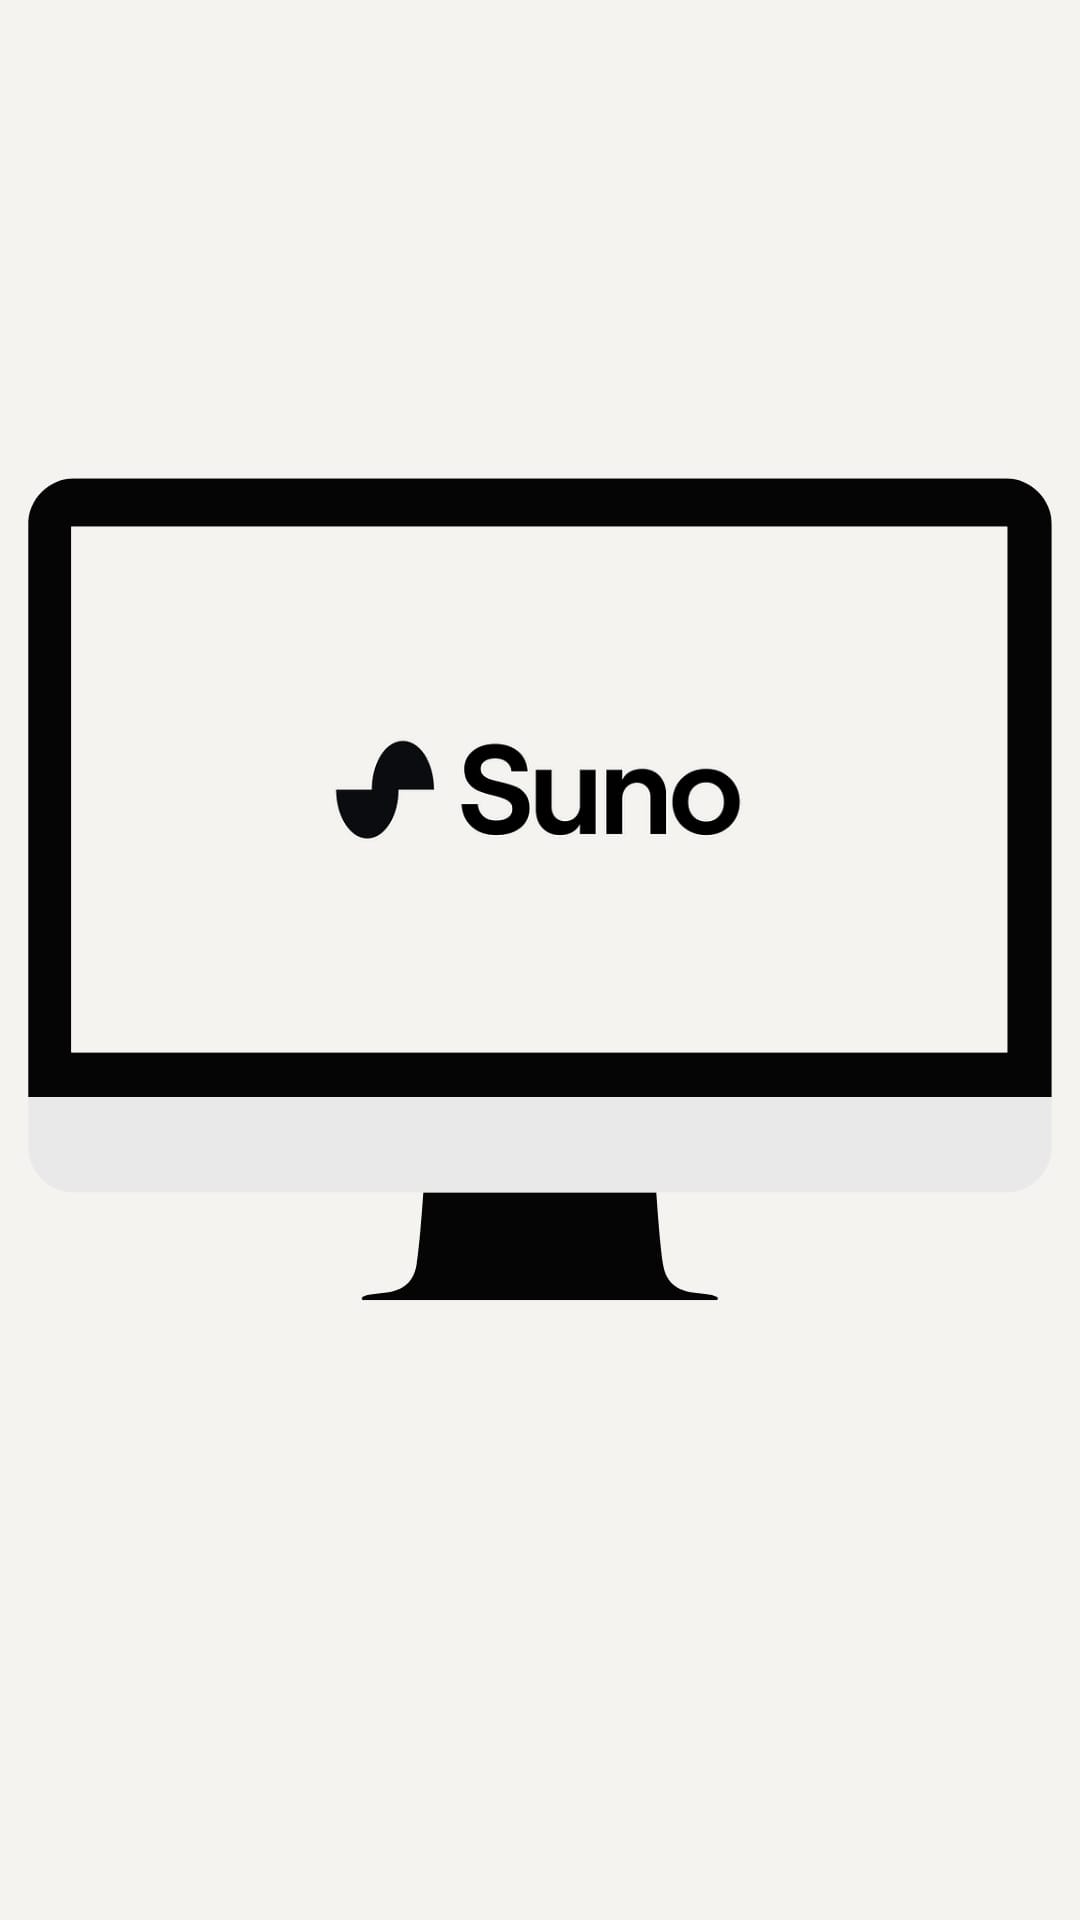 La imagen muestra un monitor de computadora con un diseño moderno y minimalista, presentando un fondo blanco y la palabra "Suno" en el centro en letra negra y serif. El monitor tiene bordes delgados y está apoyado en una base negra, todo sobre un fondo blanco que realza su sencillez y limpieza visual.